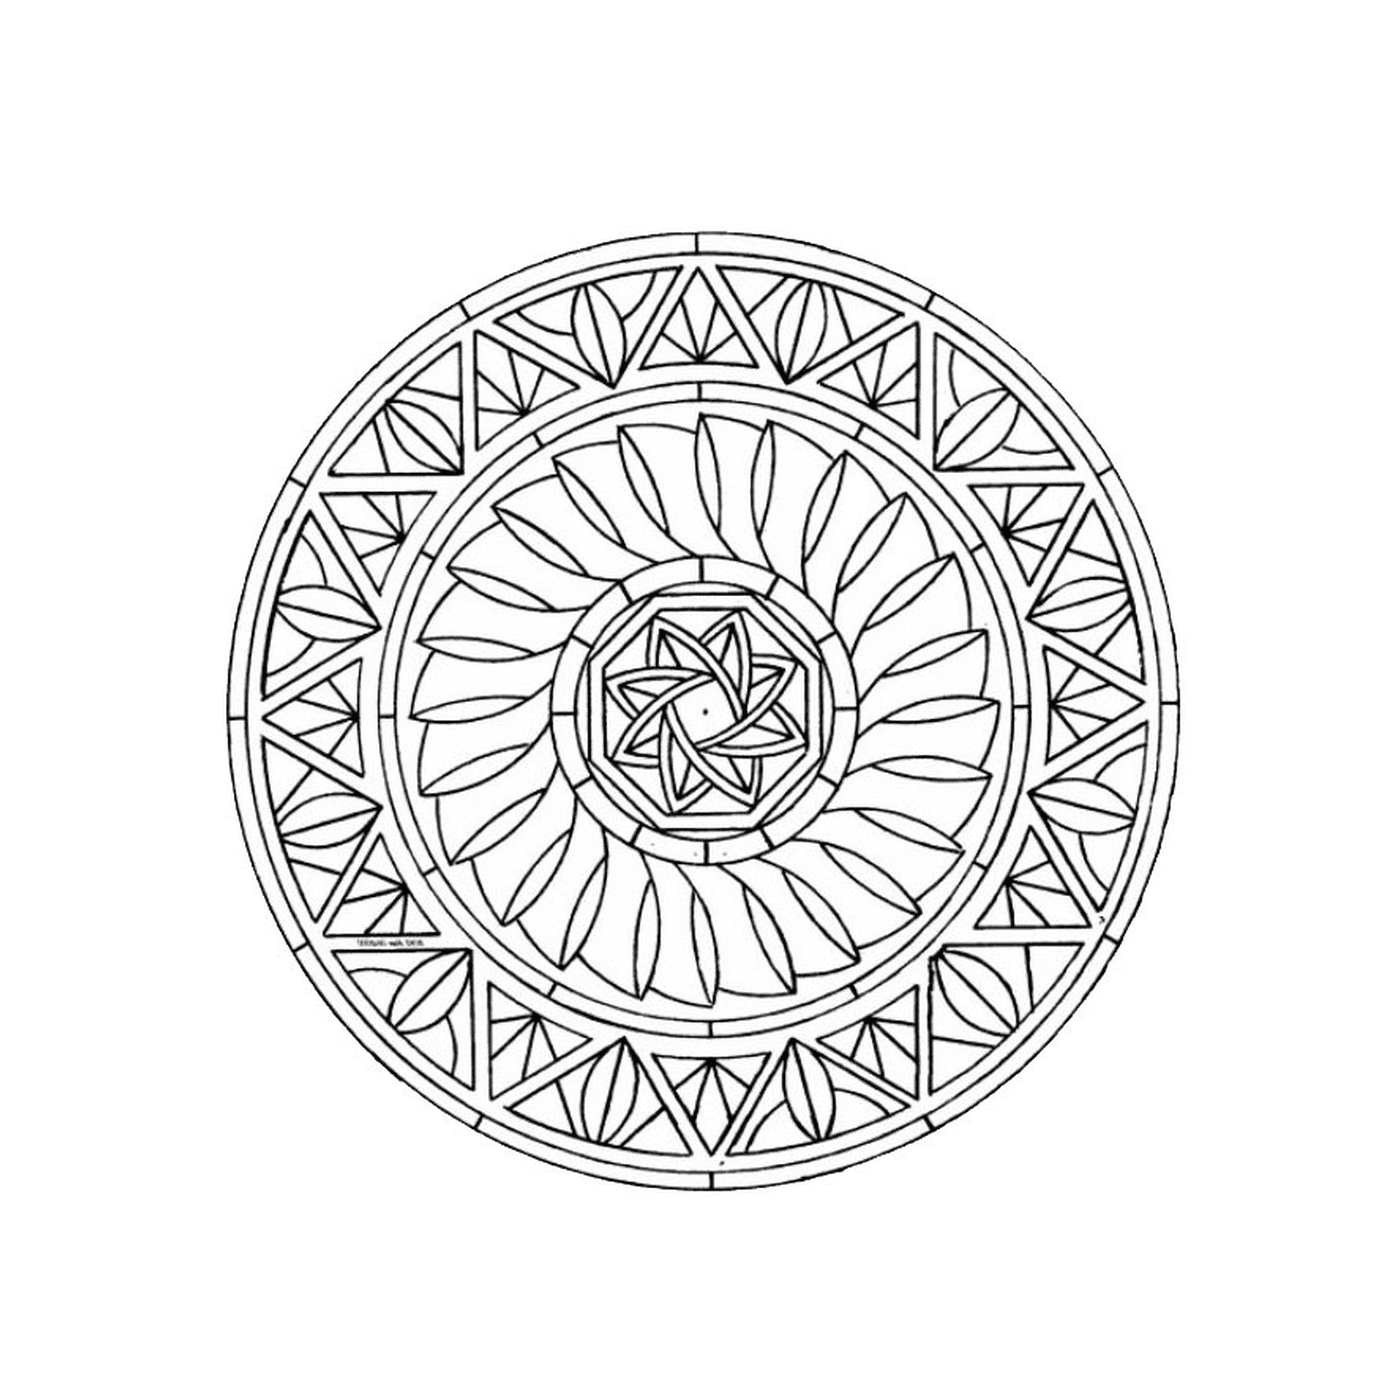   Mandala avec formes géométriques 